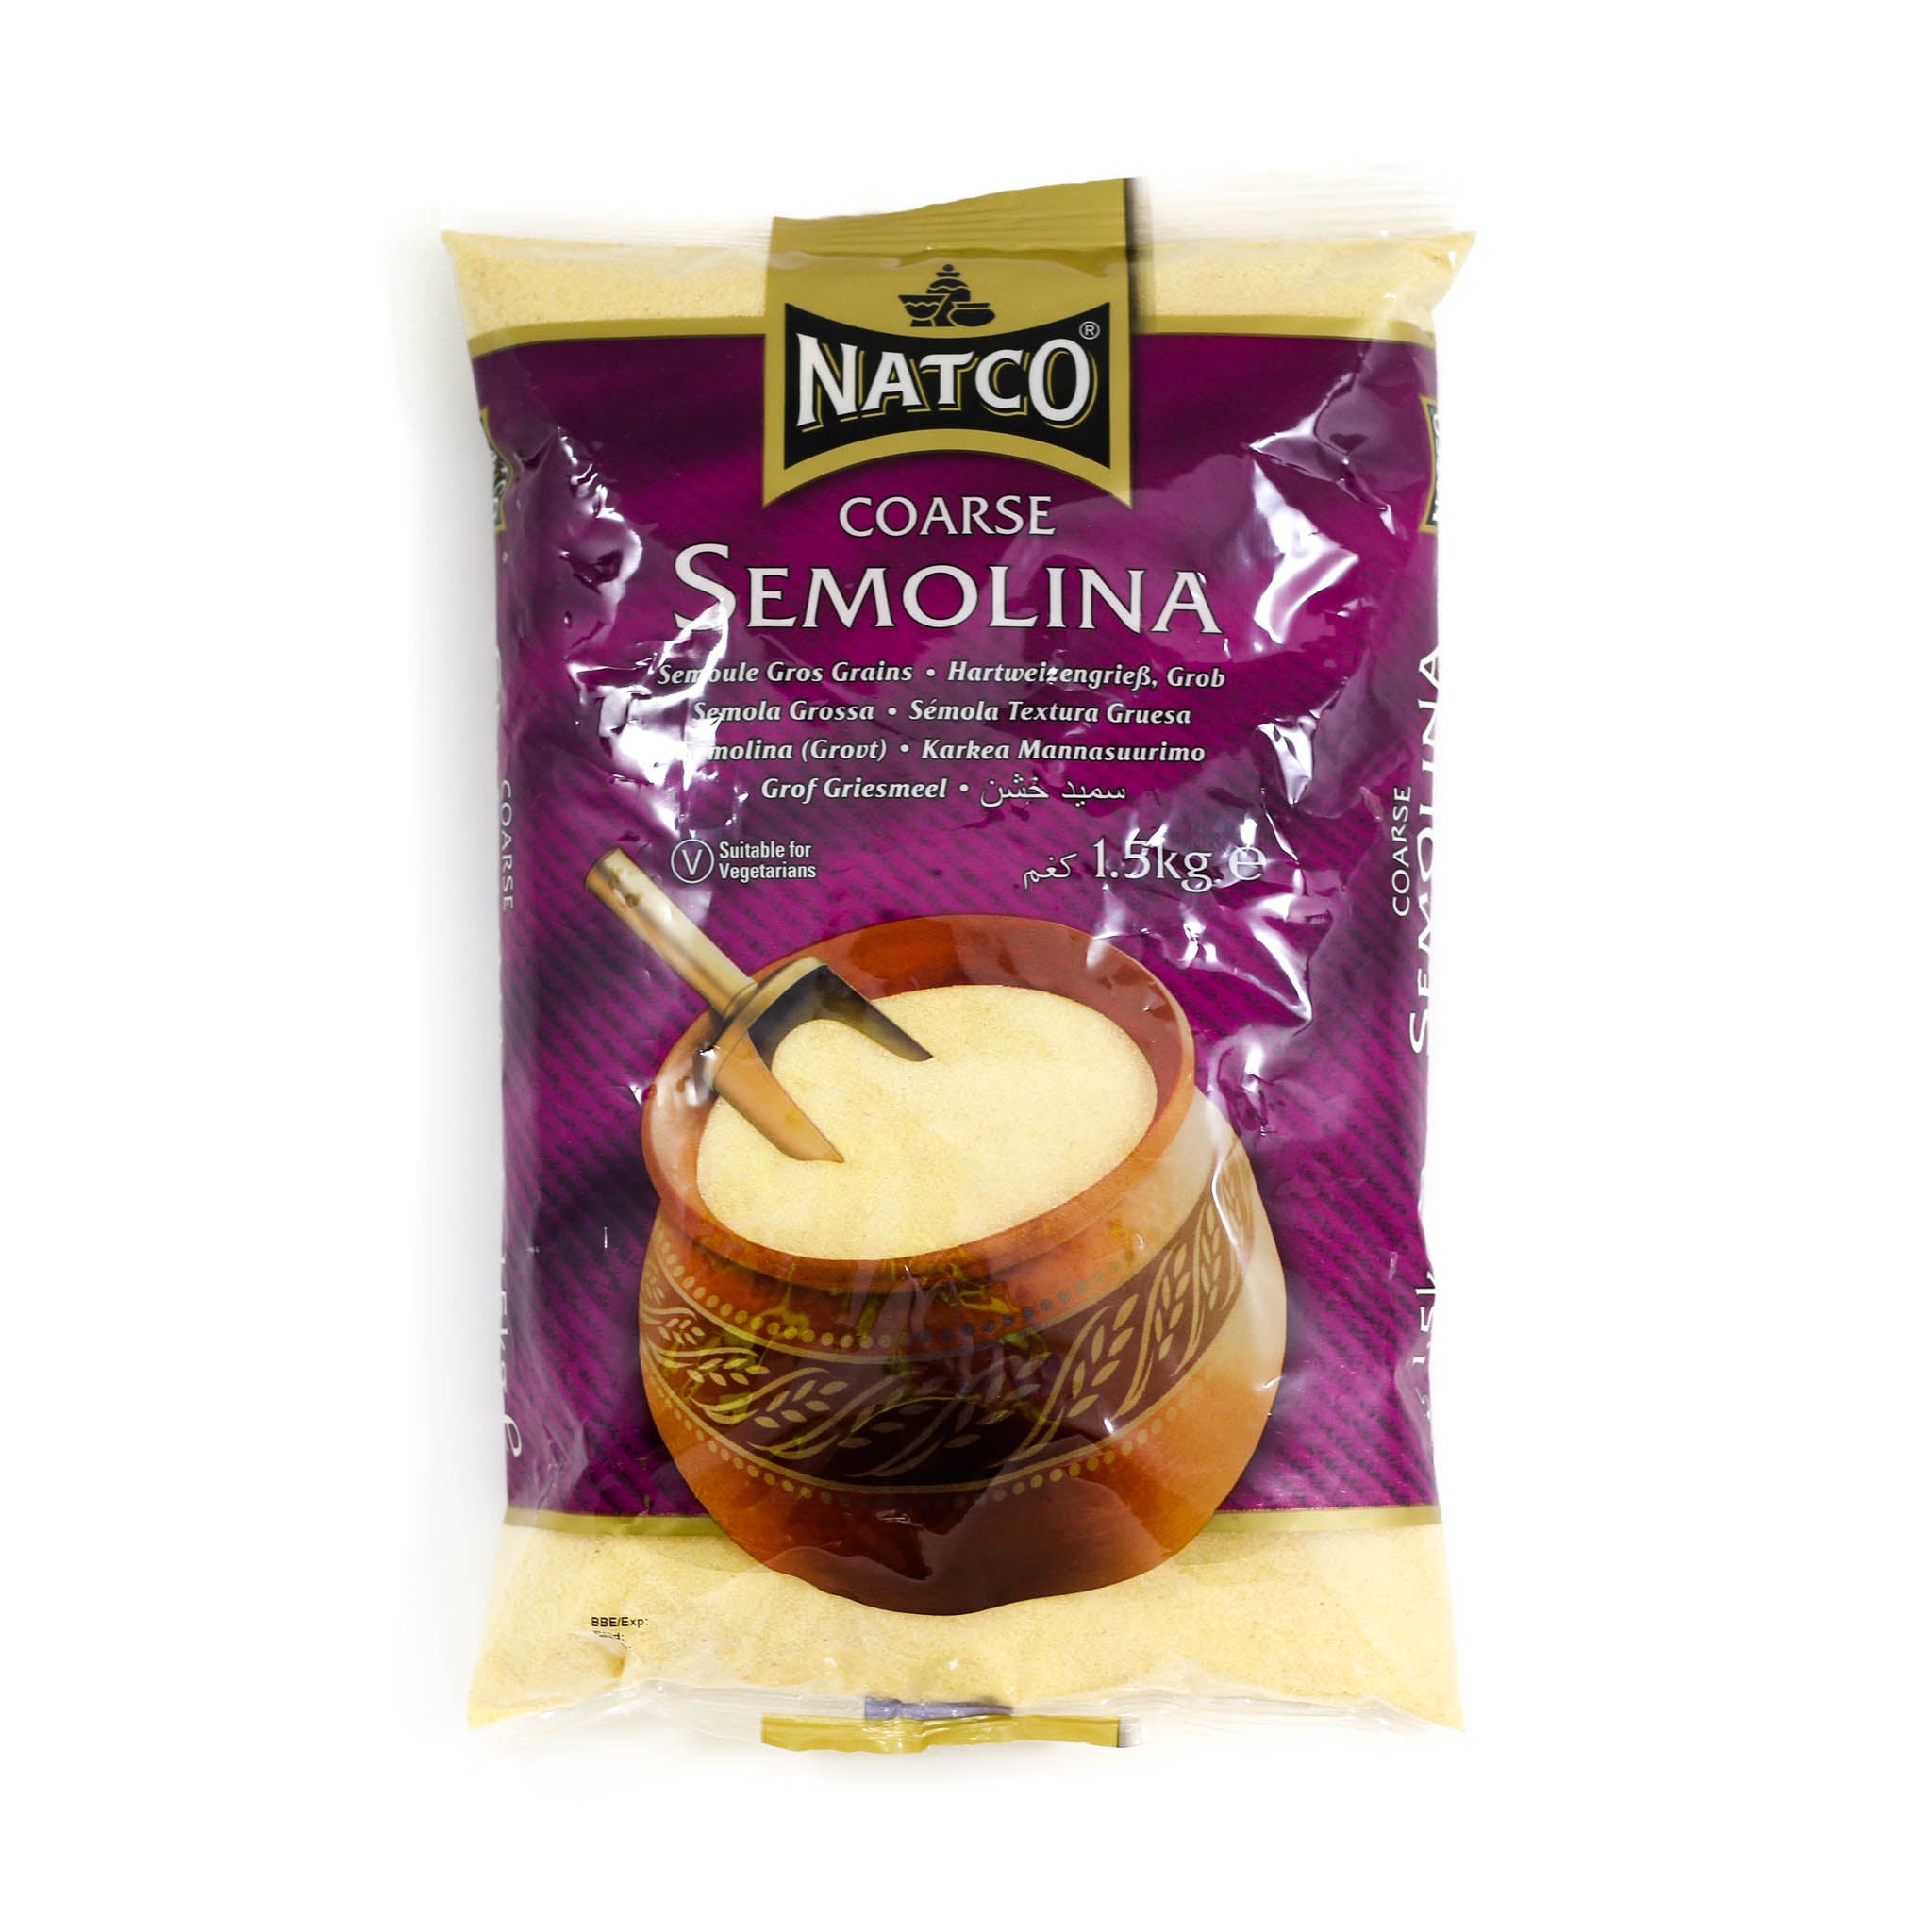 Natco Coarse Semolina 1.5kg